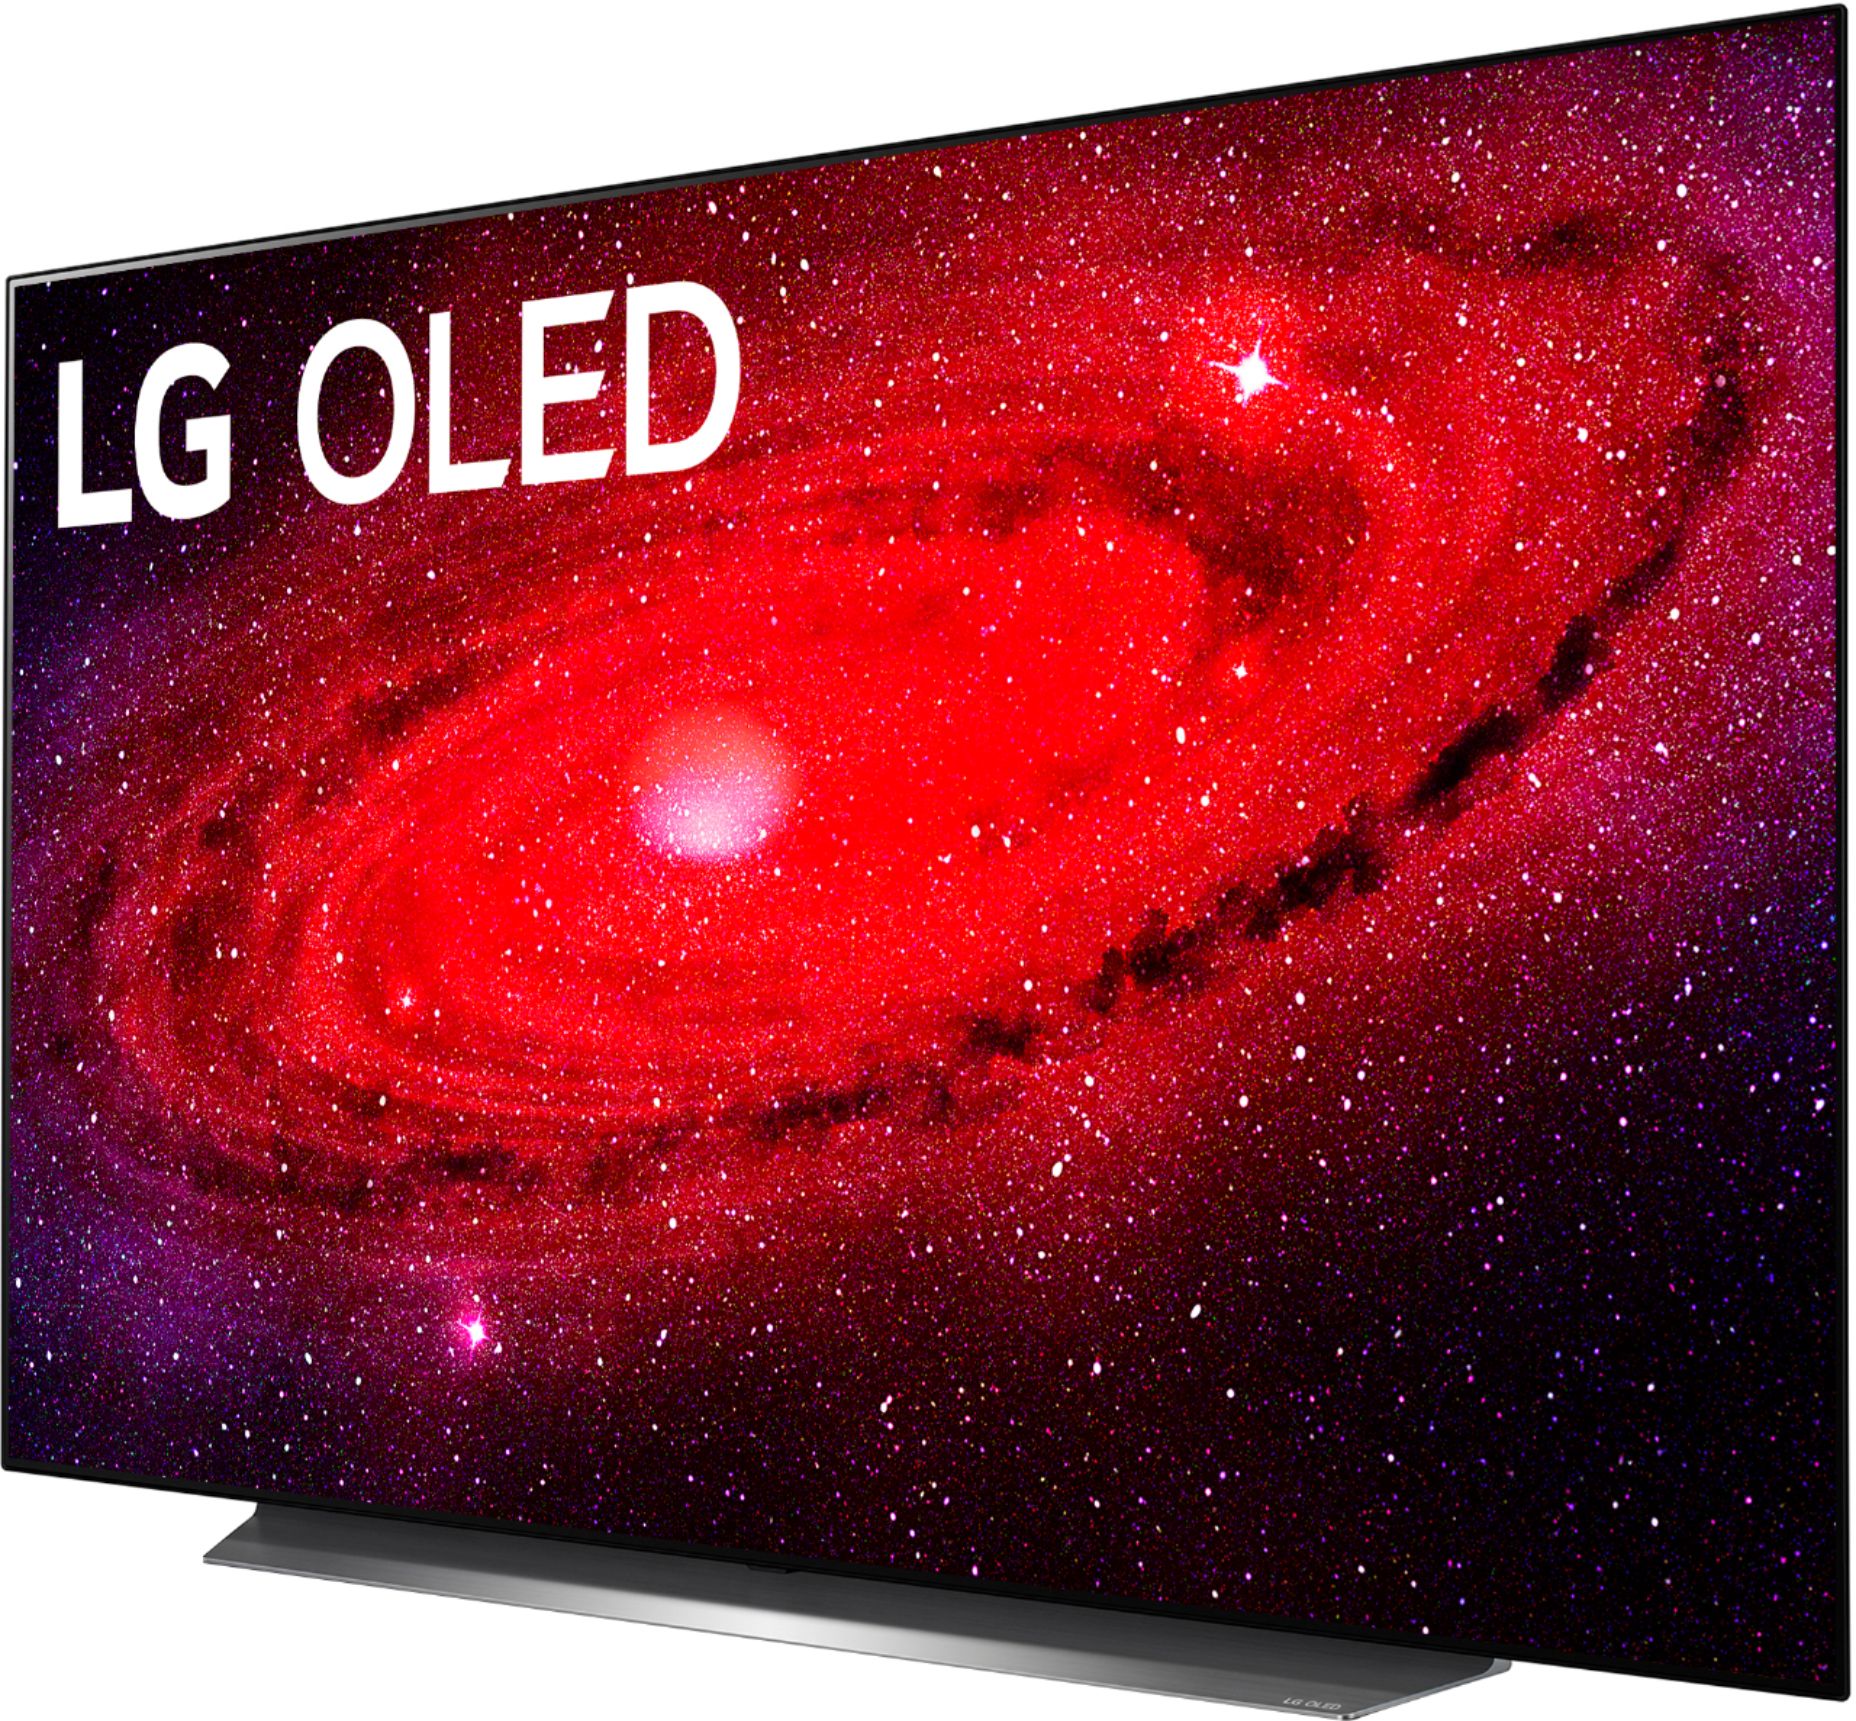 LG 4K OLED CX 有機ELテレビ55V型 CX55-